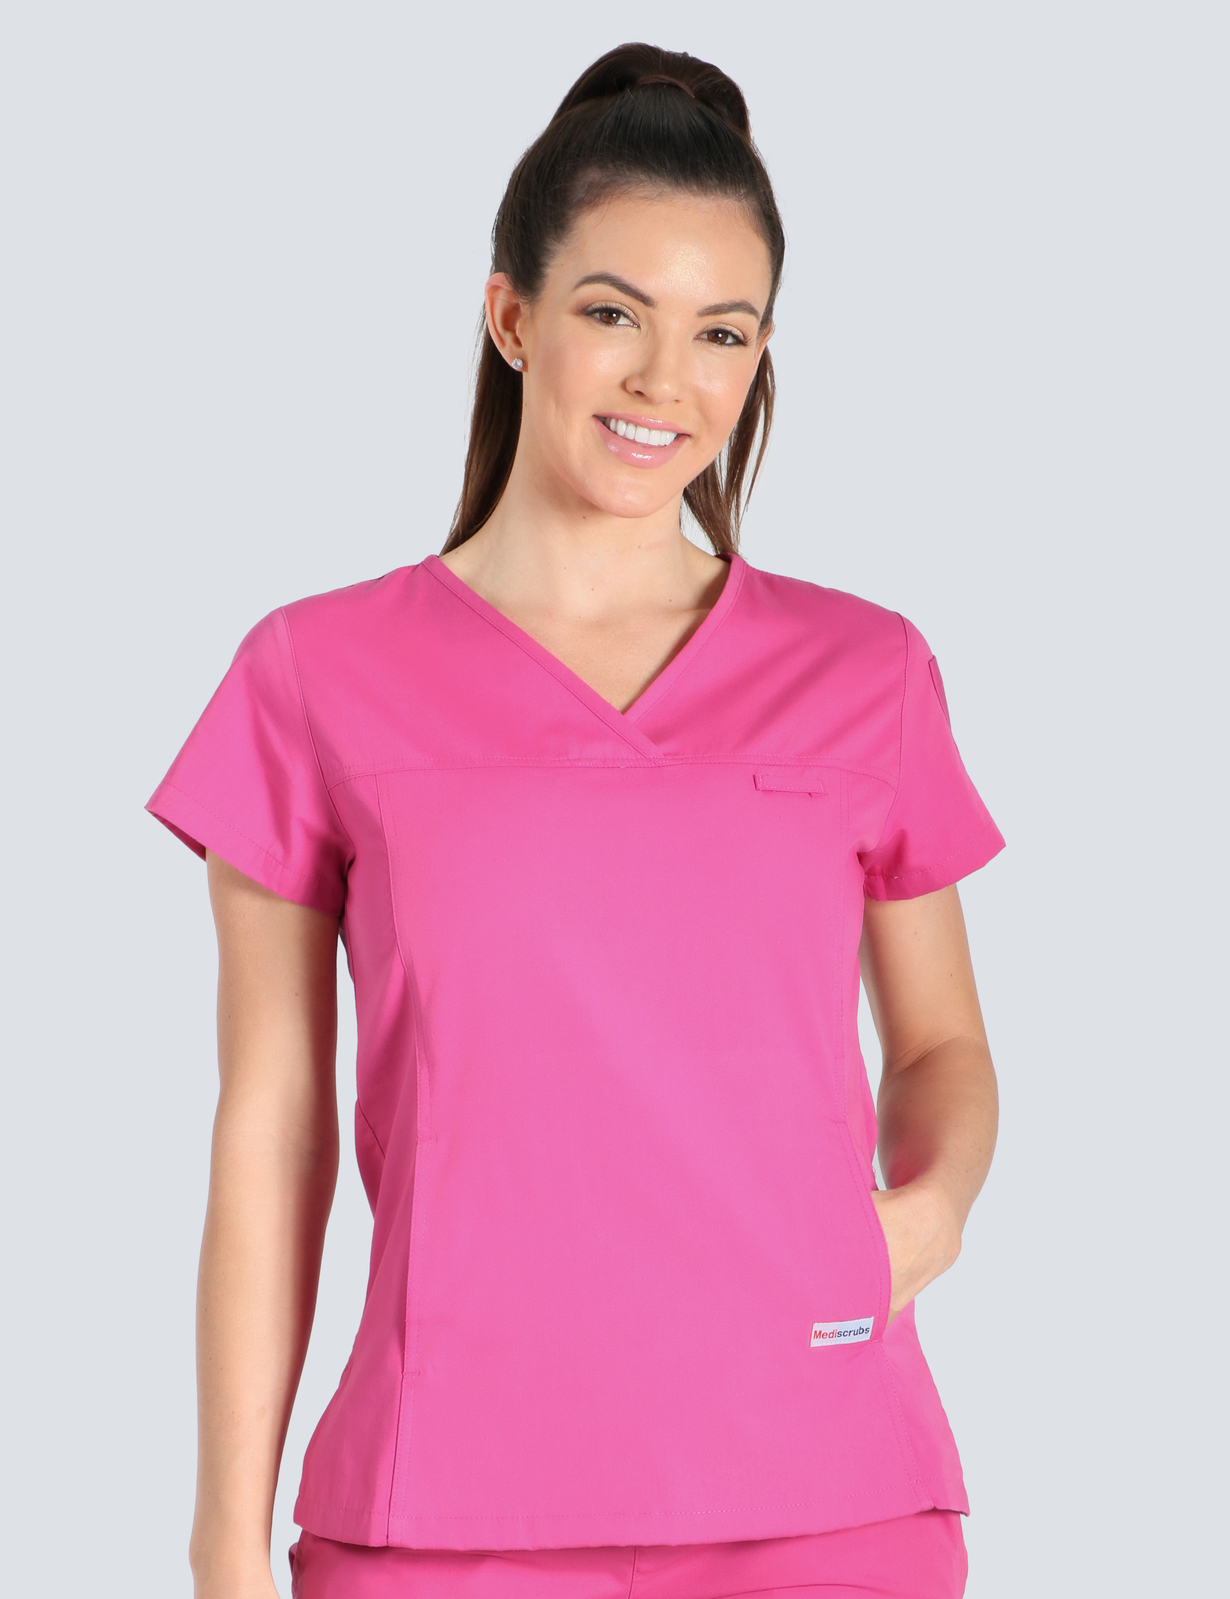 Queensland Children's Hospital Emergency Department Registrar Uniform Top Bundle  (Women's Fit Top in Pink  incl Logos)